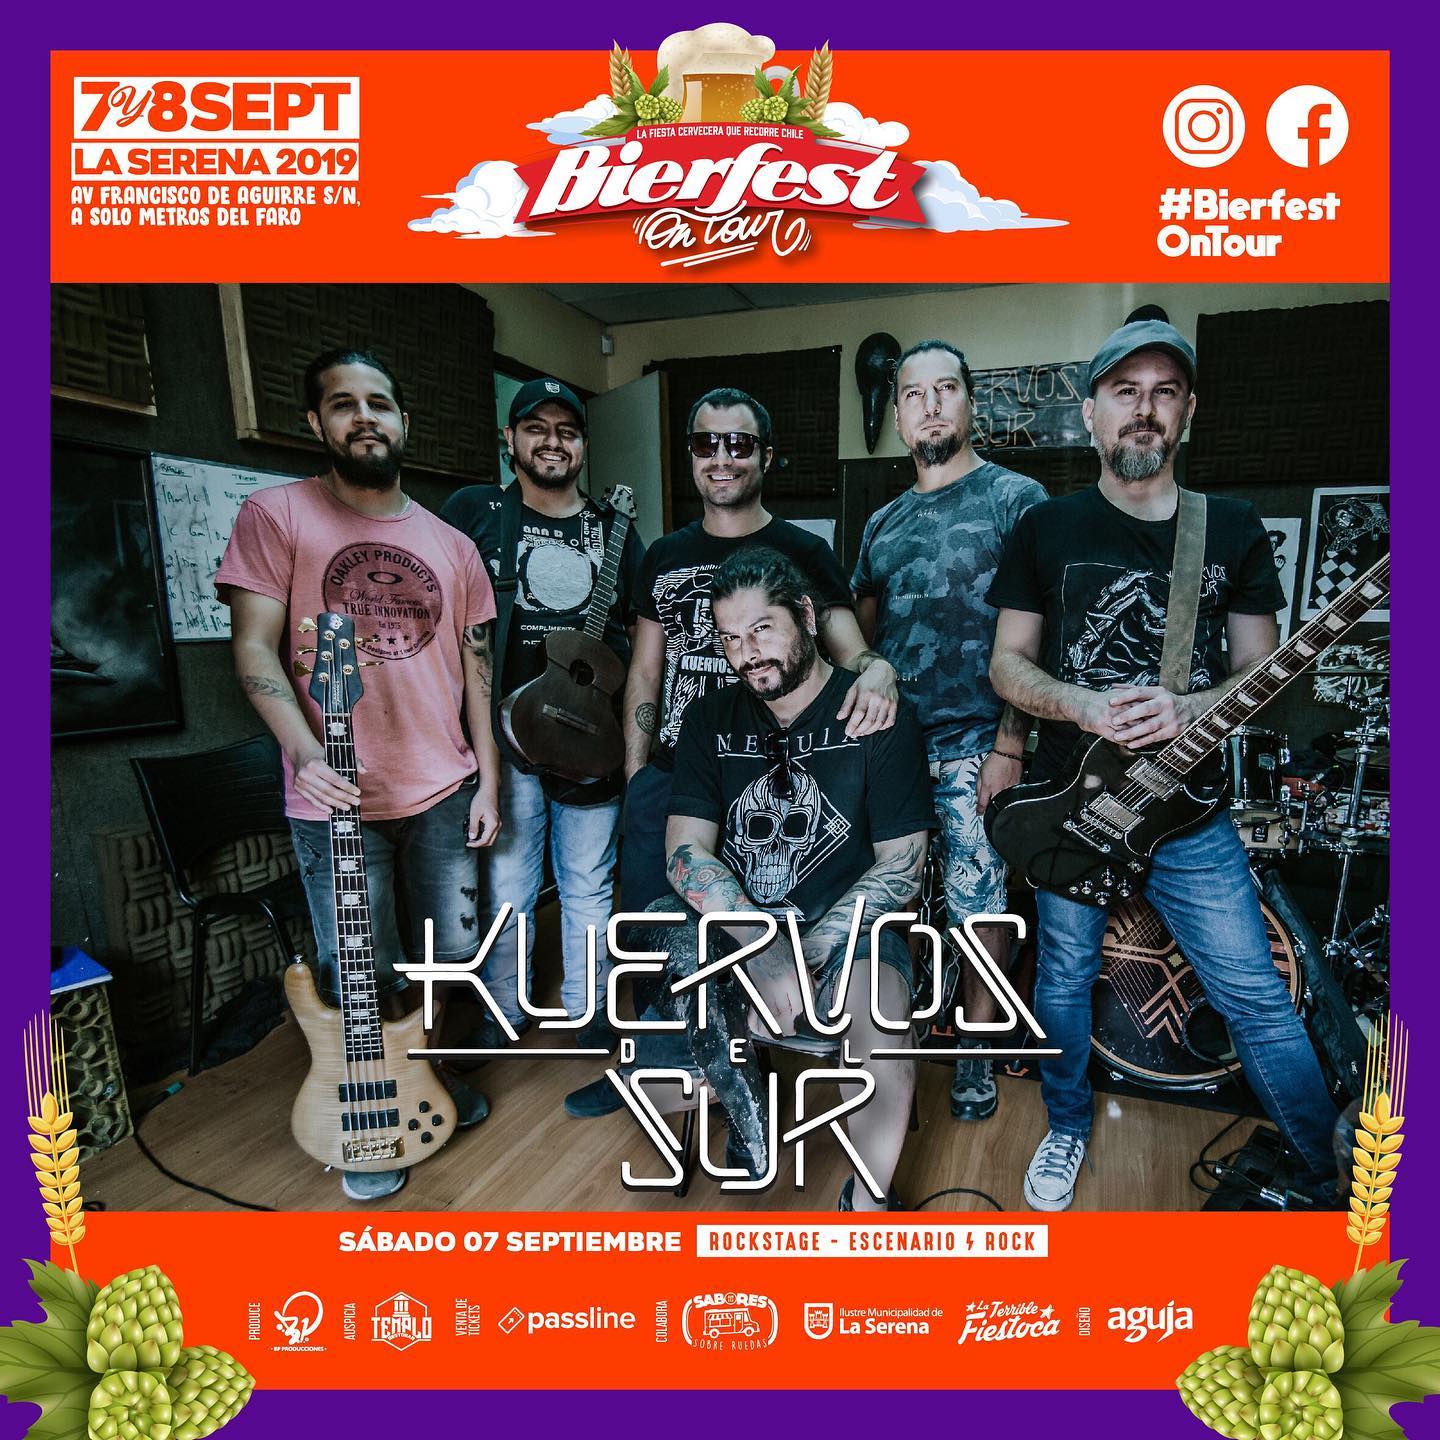 Septiembre comienza con el BierFest de La Serena: Quique Neira, Kuervos del Sur, Red, Shamanes, La Combo Tortuga y más